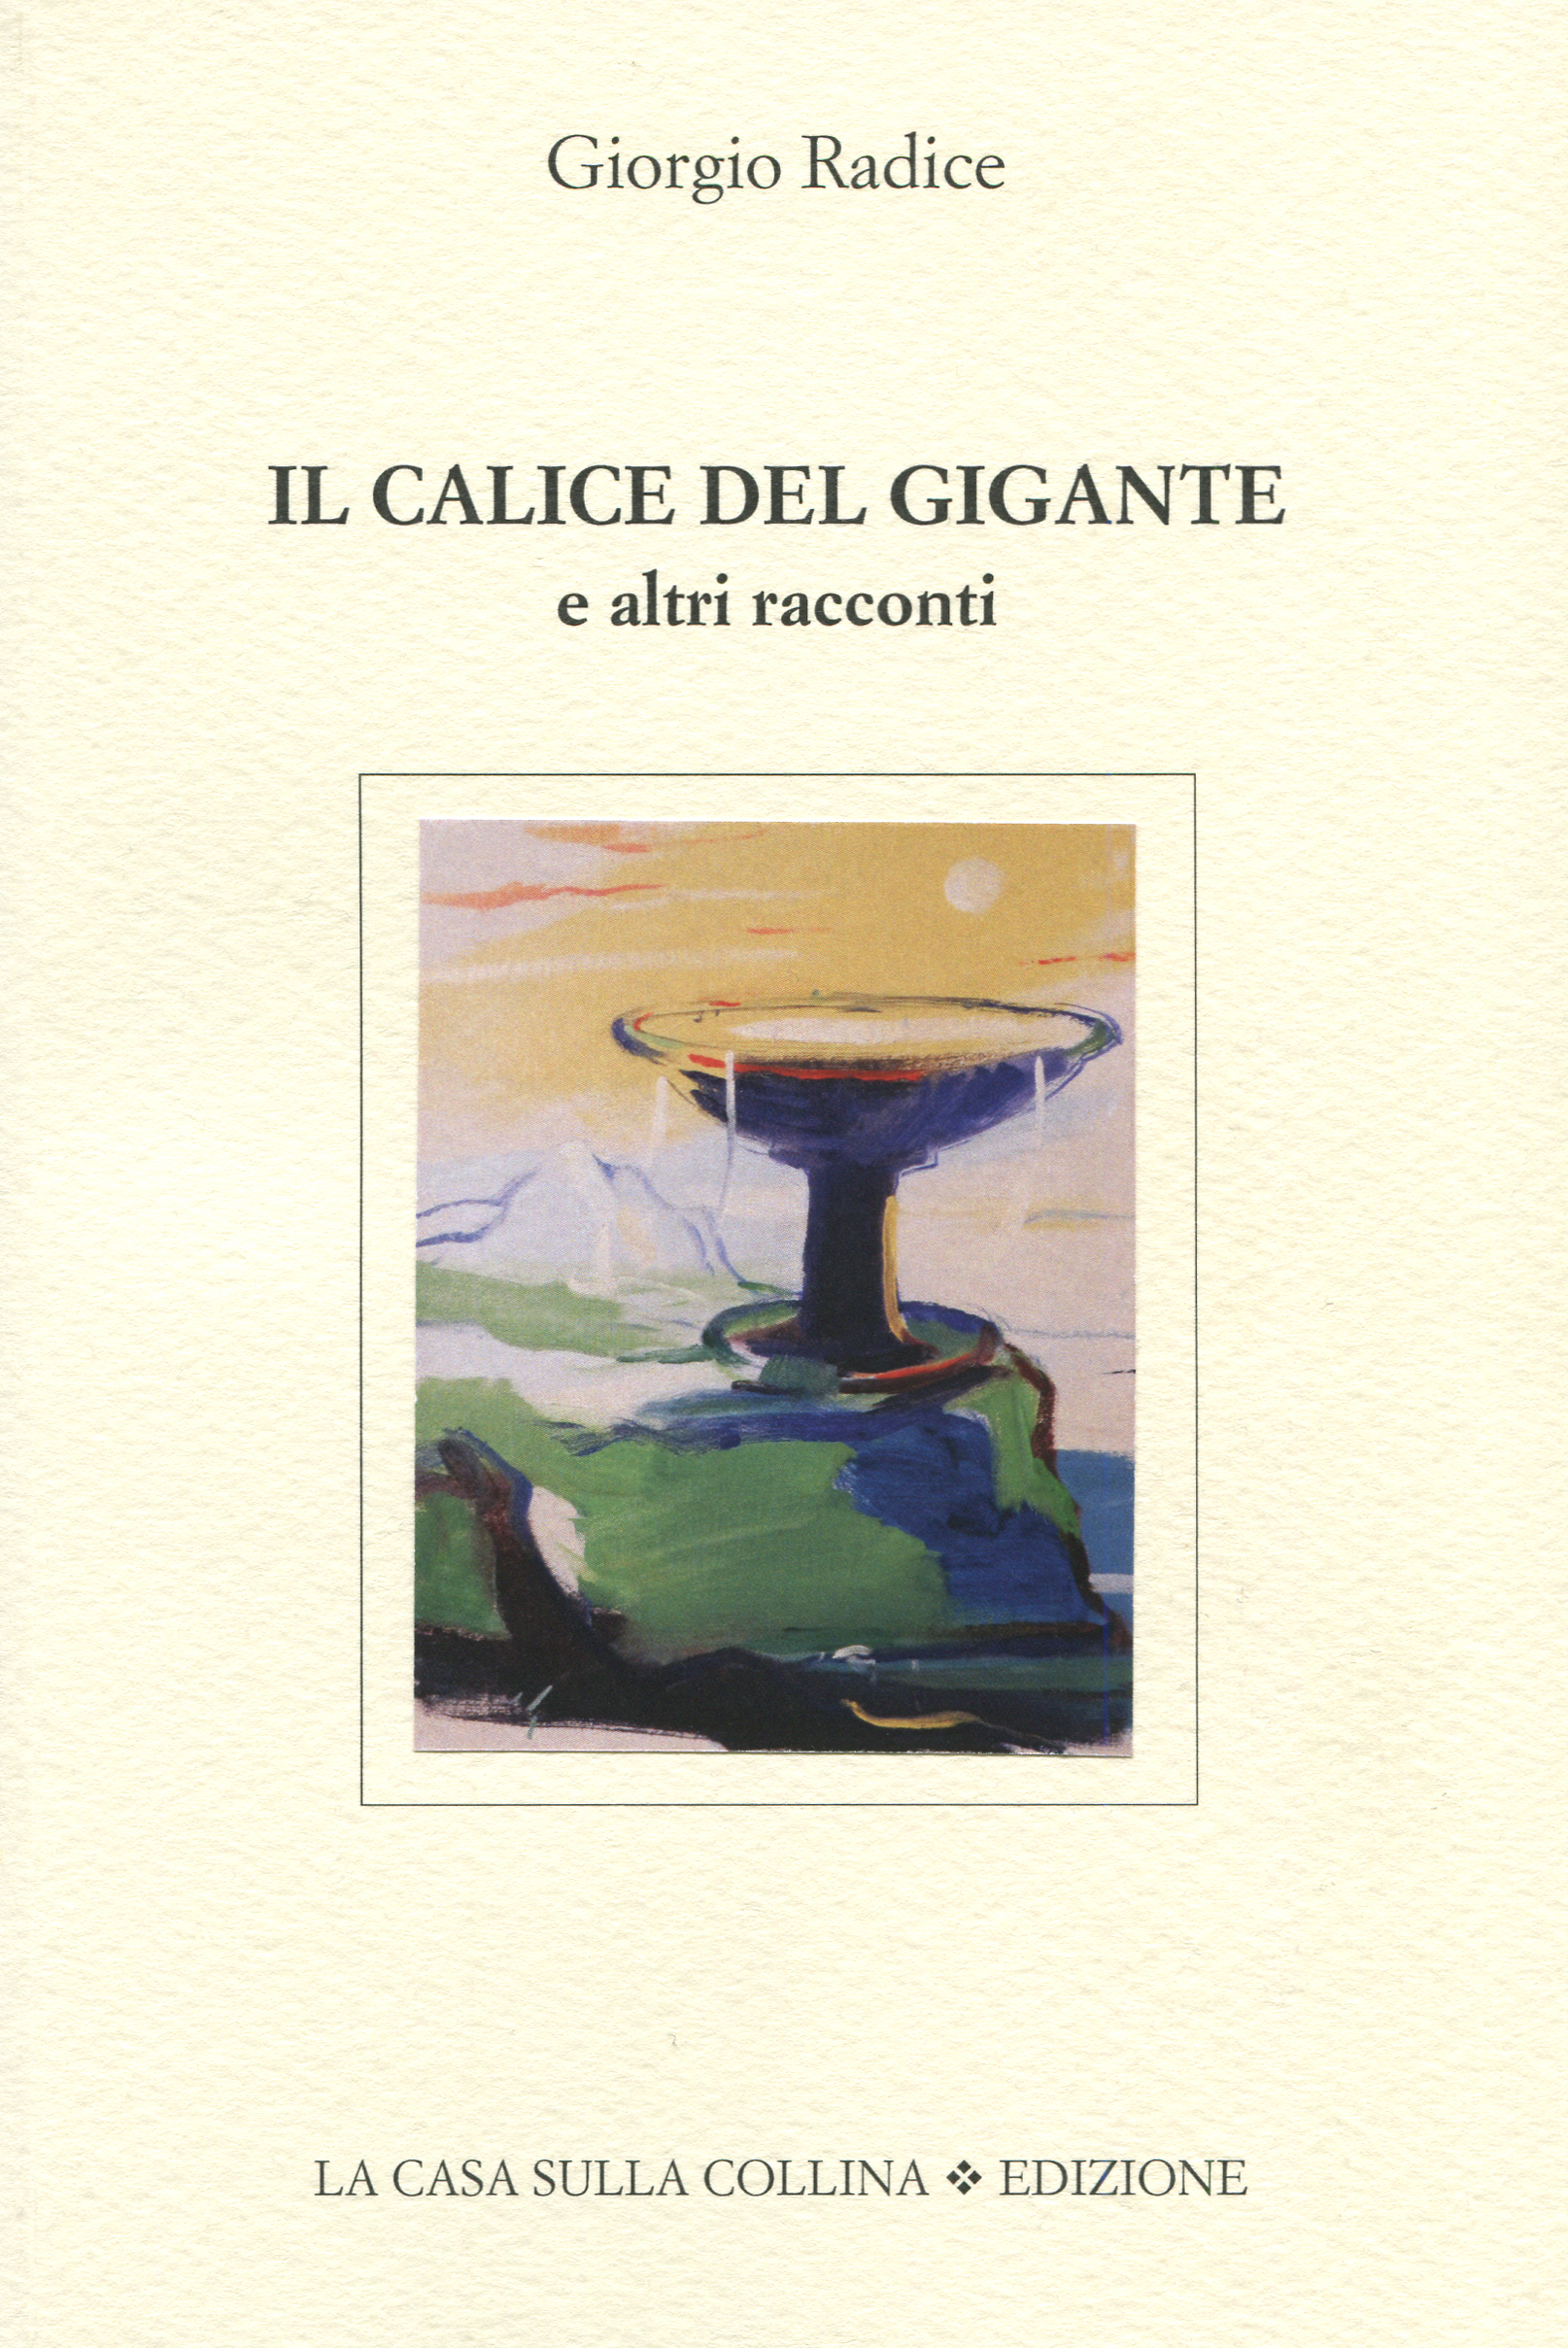 Giorgio Radice, gli scritti: A Sanguigna